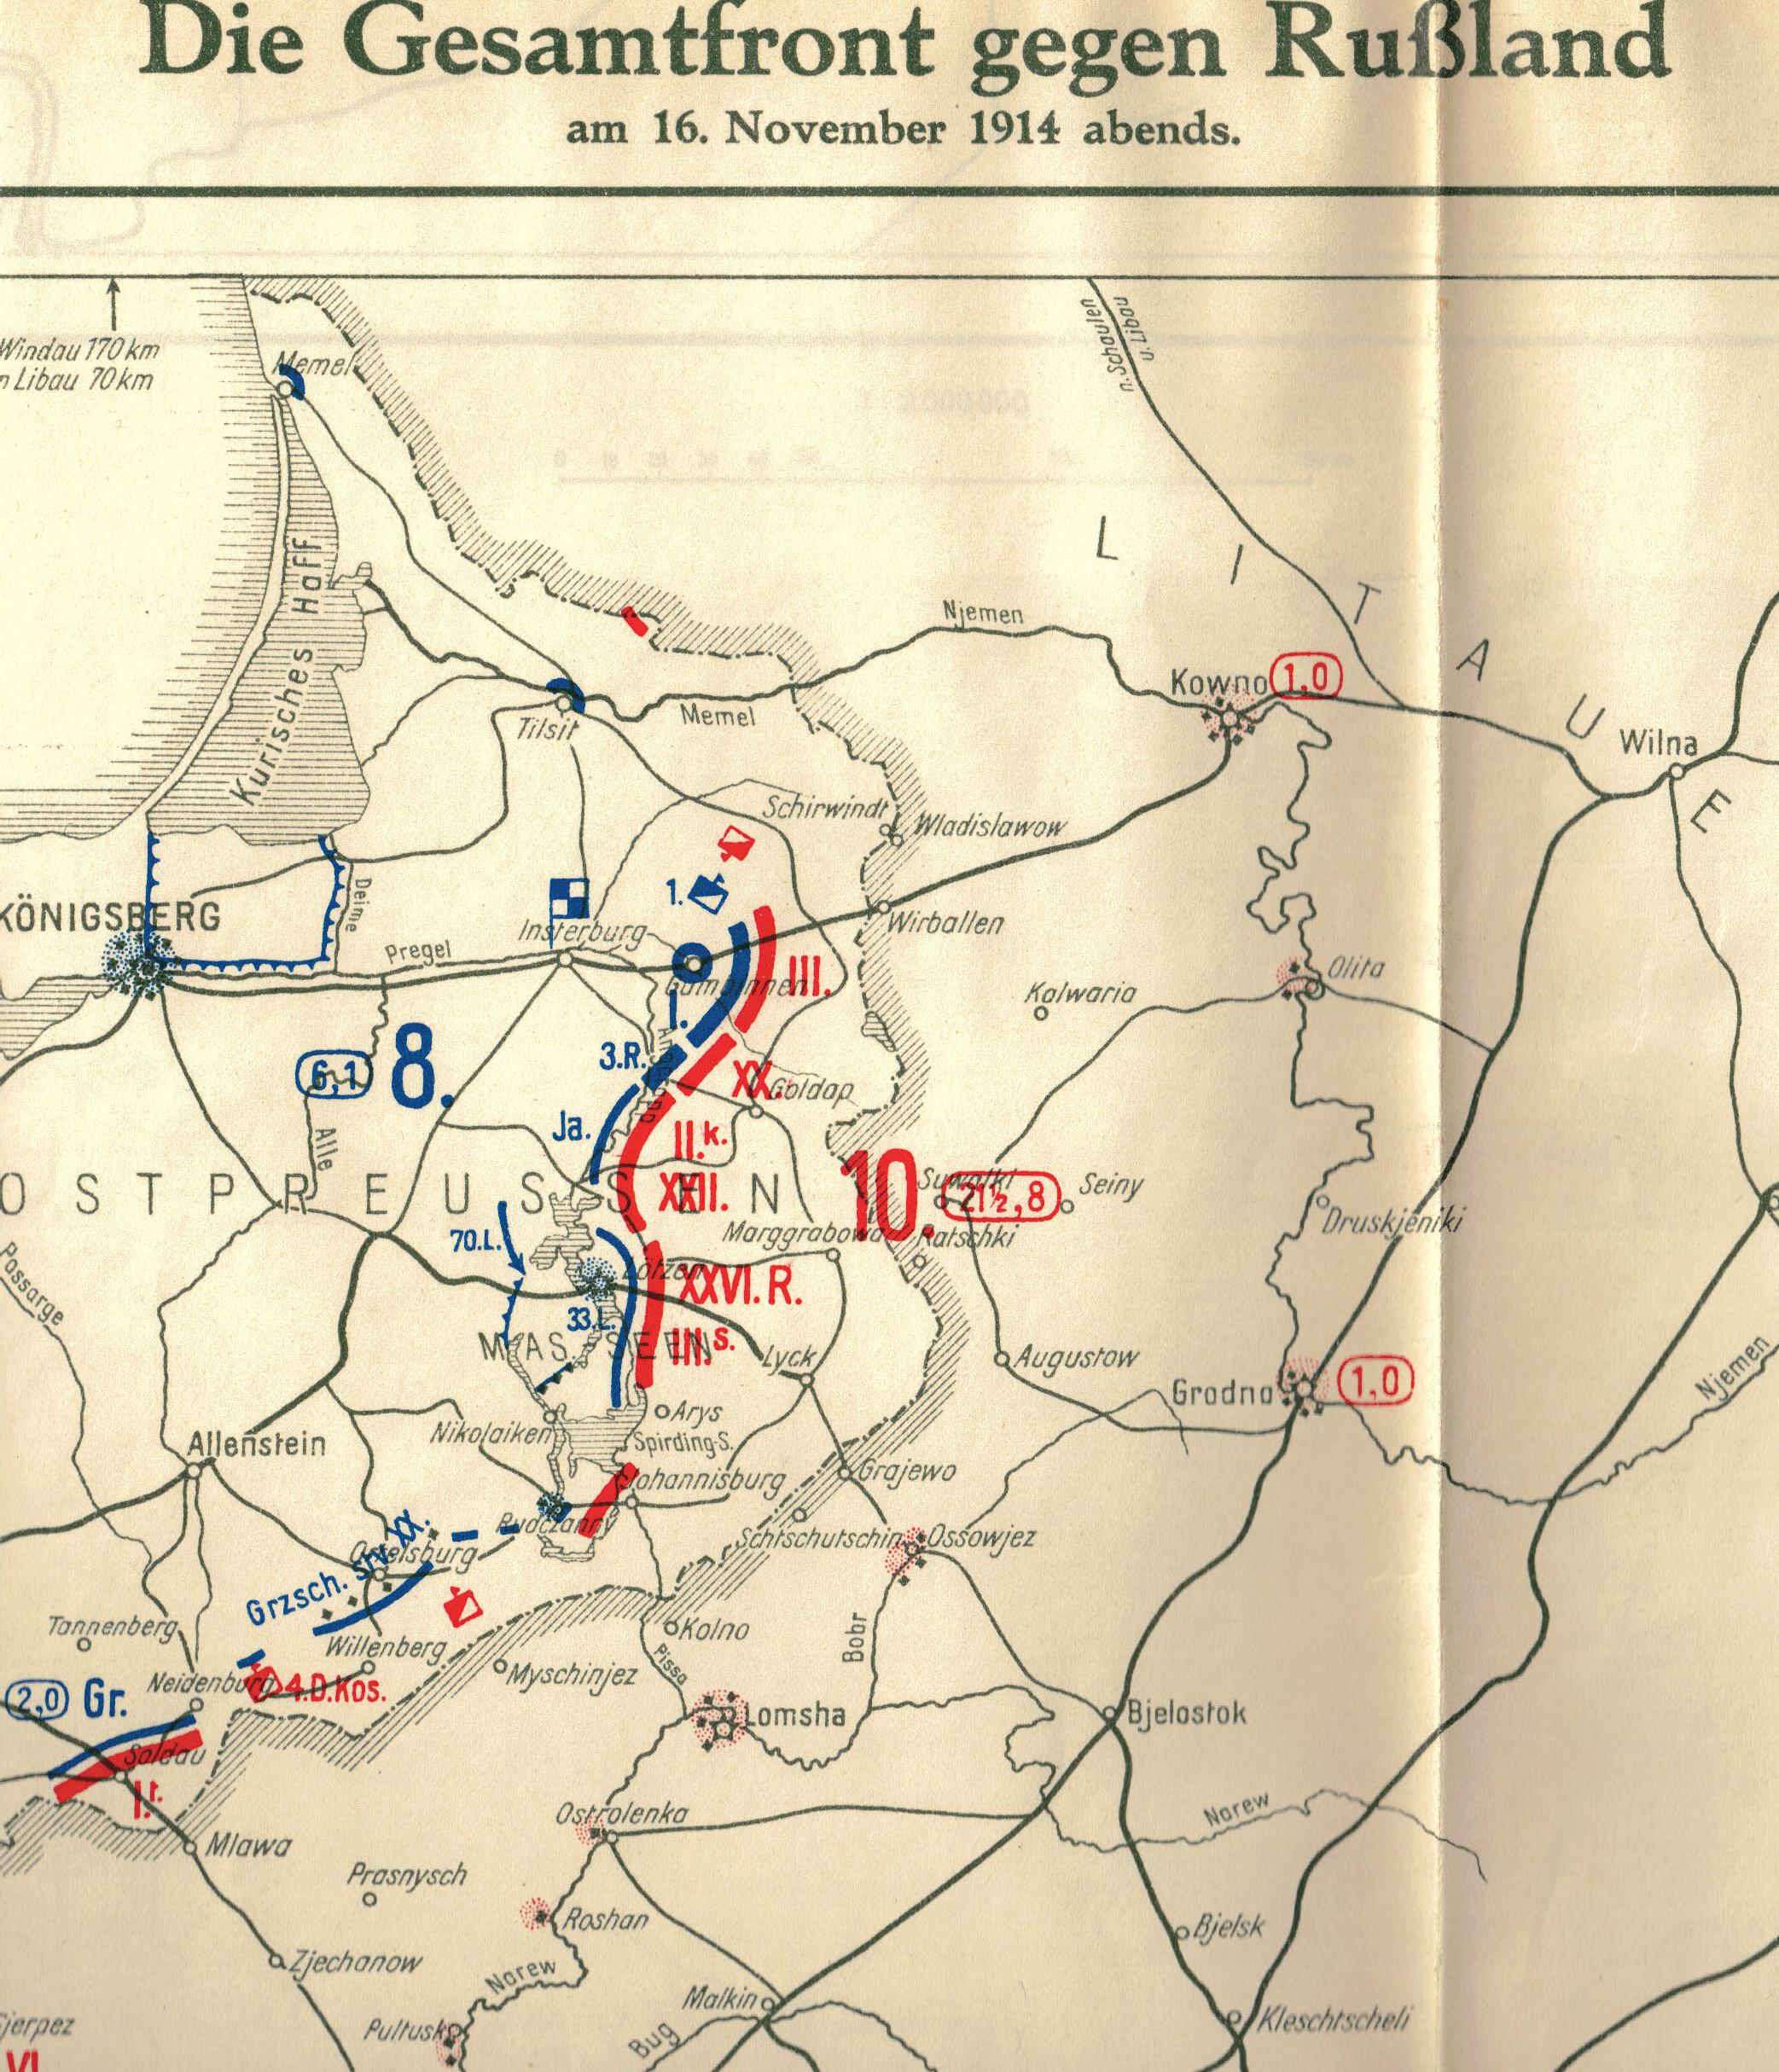 16. november 1914. Østfront. LIR nr. 84: ”Tilbagetrækning selvom man havde givet russerne et kraftigt slag.”